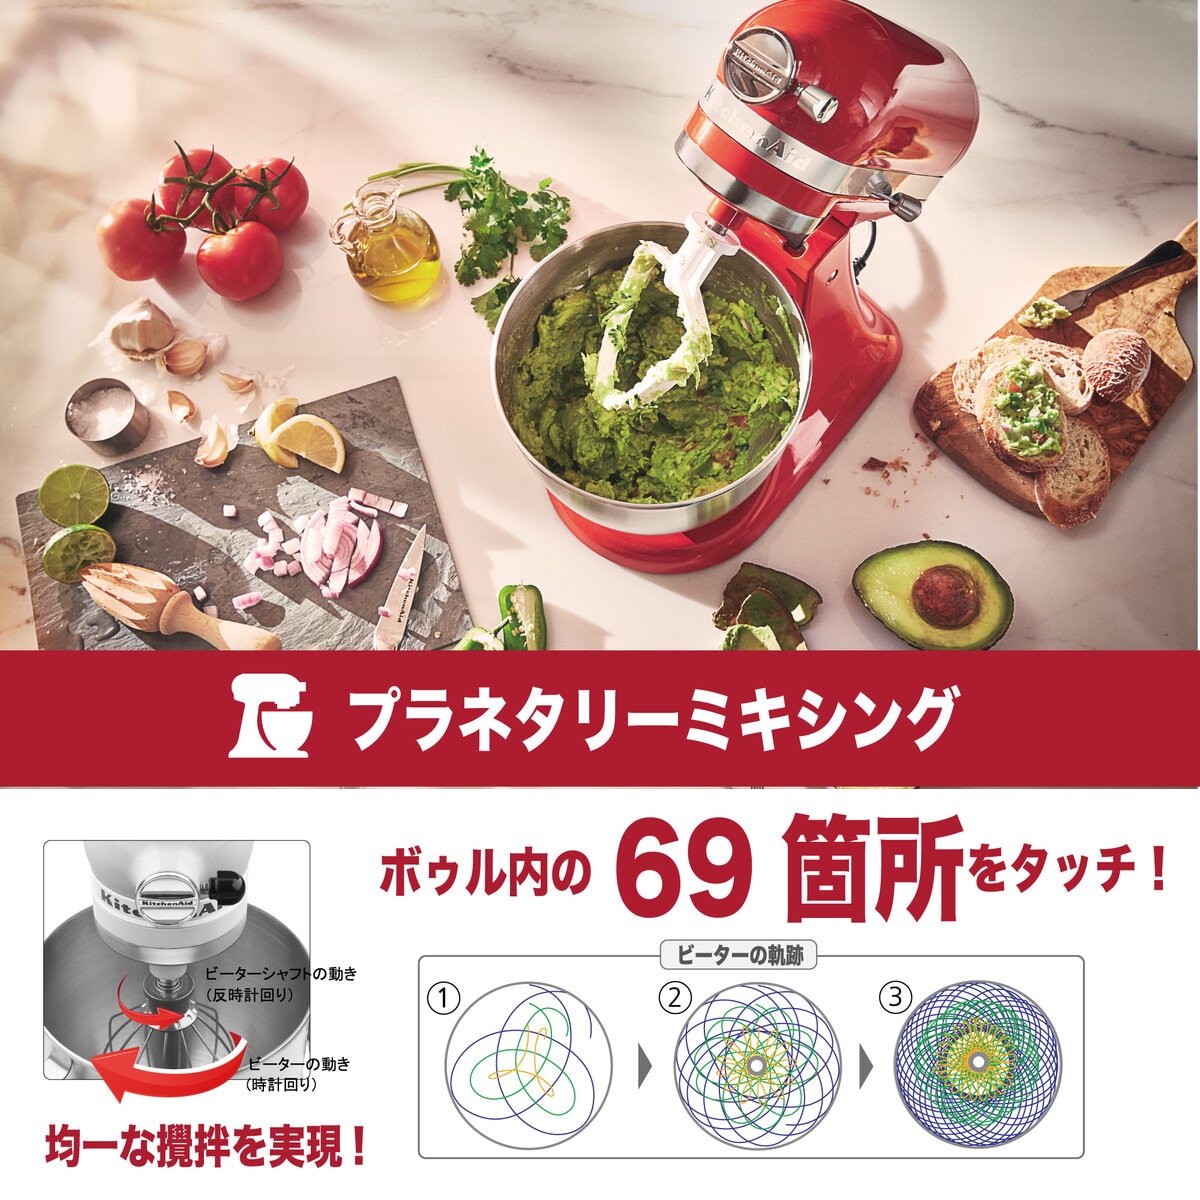 キッチンエイド アルチザン ミニ スタンドミキサー 3.3L Costco Japan